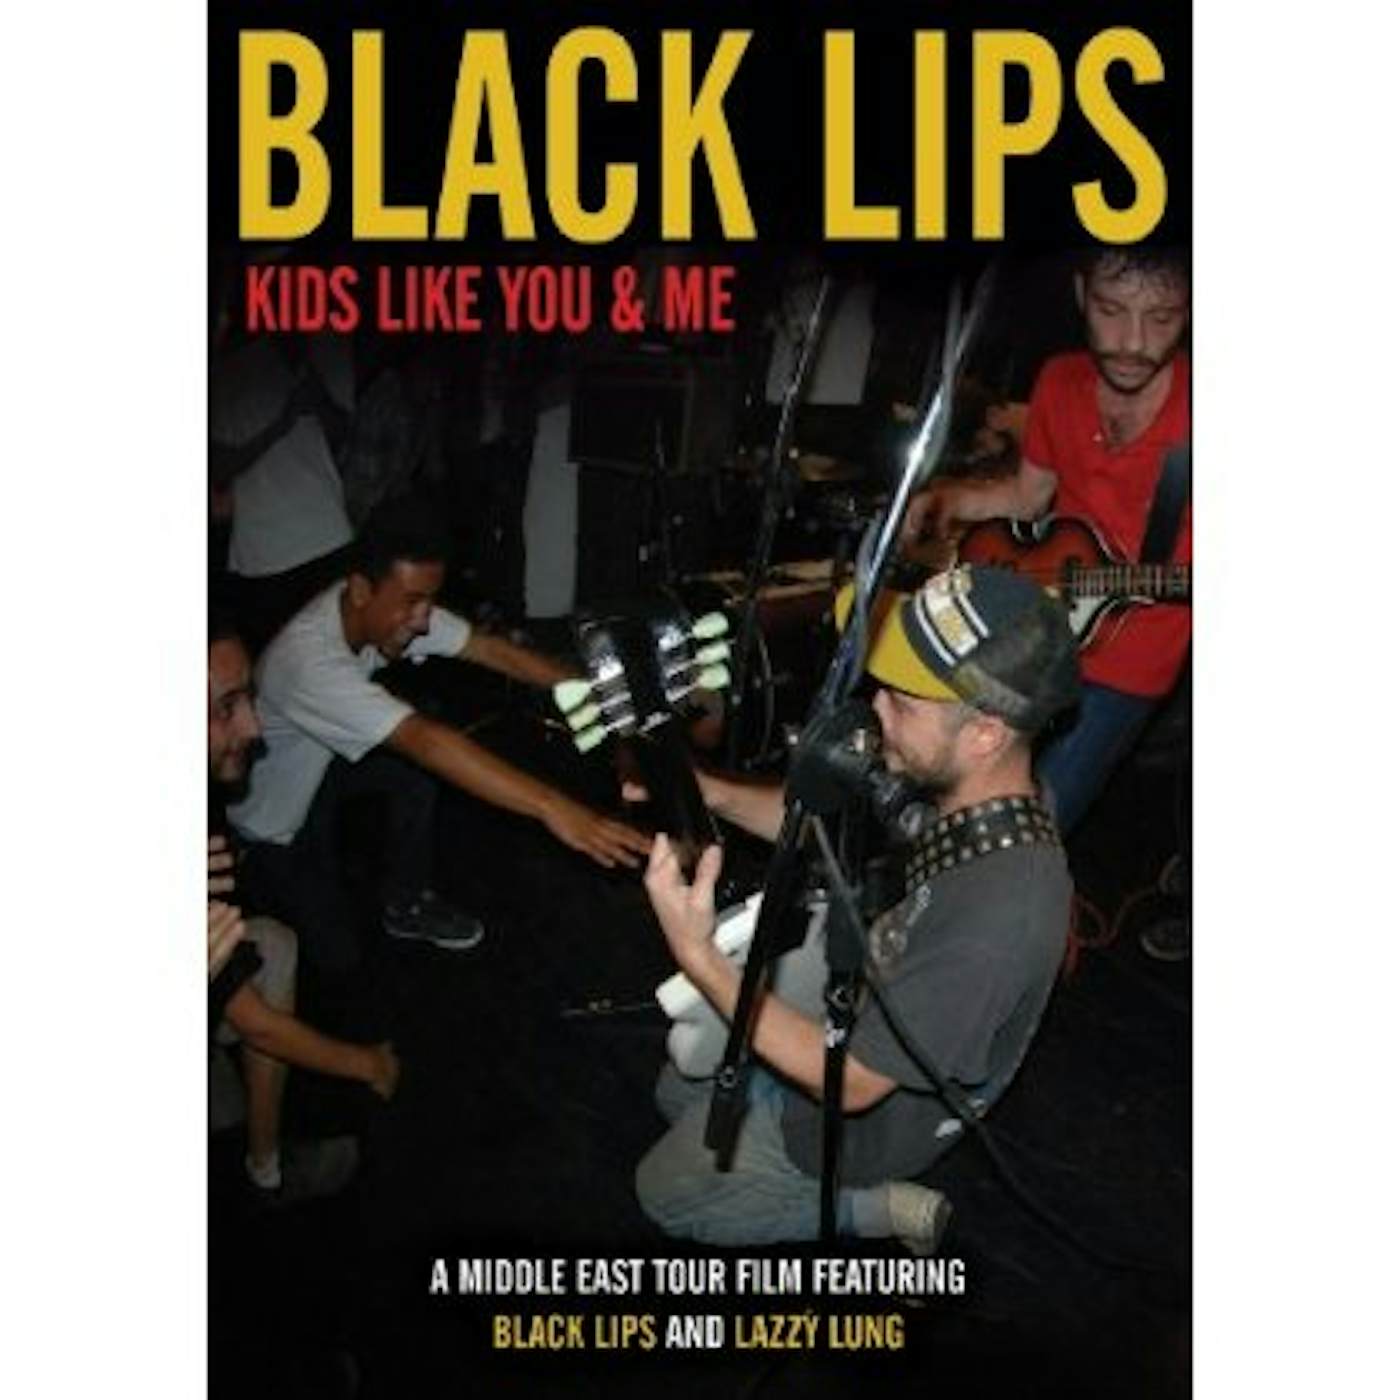 Black Lips KIDS LIKE YOU & ME DVD